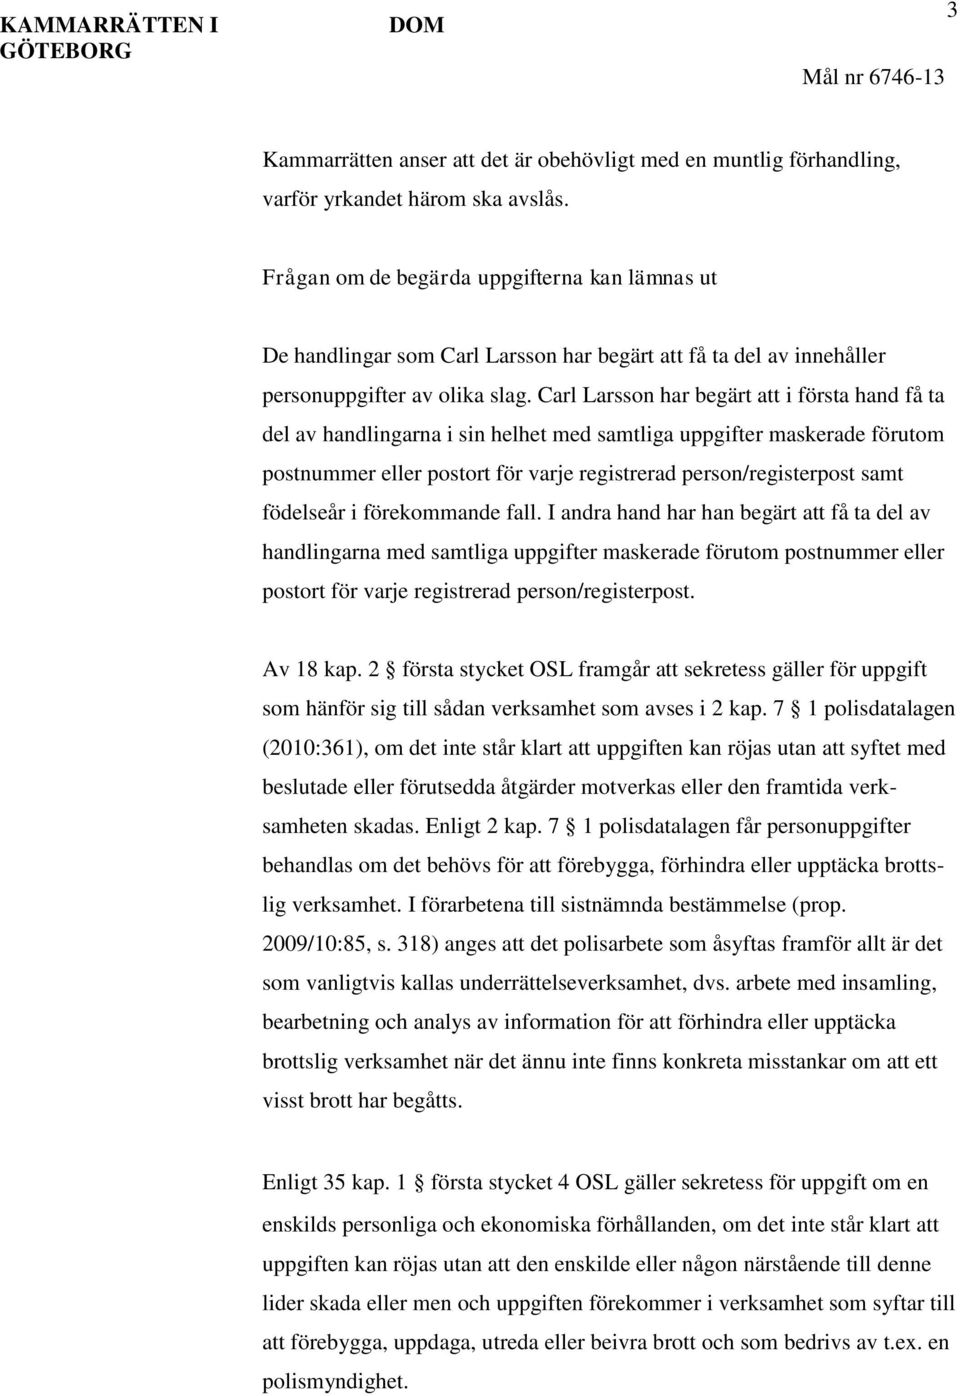 Carl Larsson har begärt att i första hand få ta del av handlingarna i sin helhet med samtliga uppgifter maskerade förutom postnummer eller postort för varje registrerad person/registerpost samt